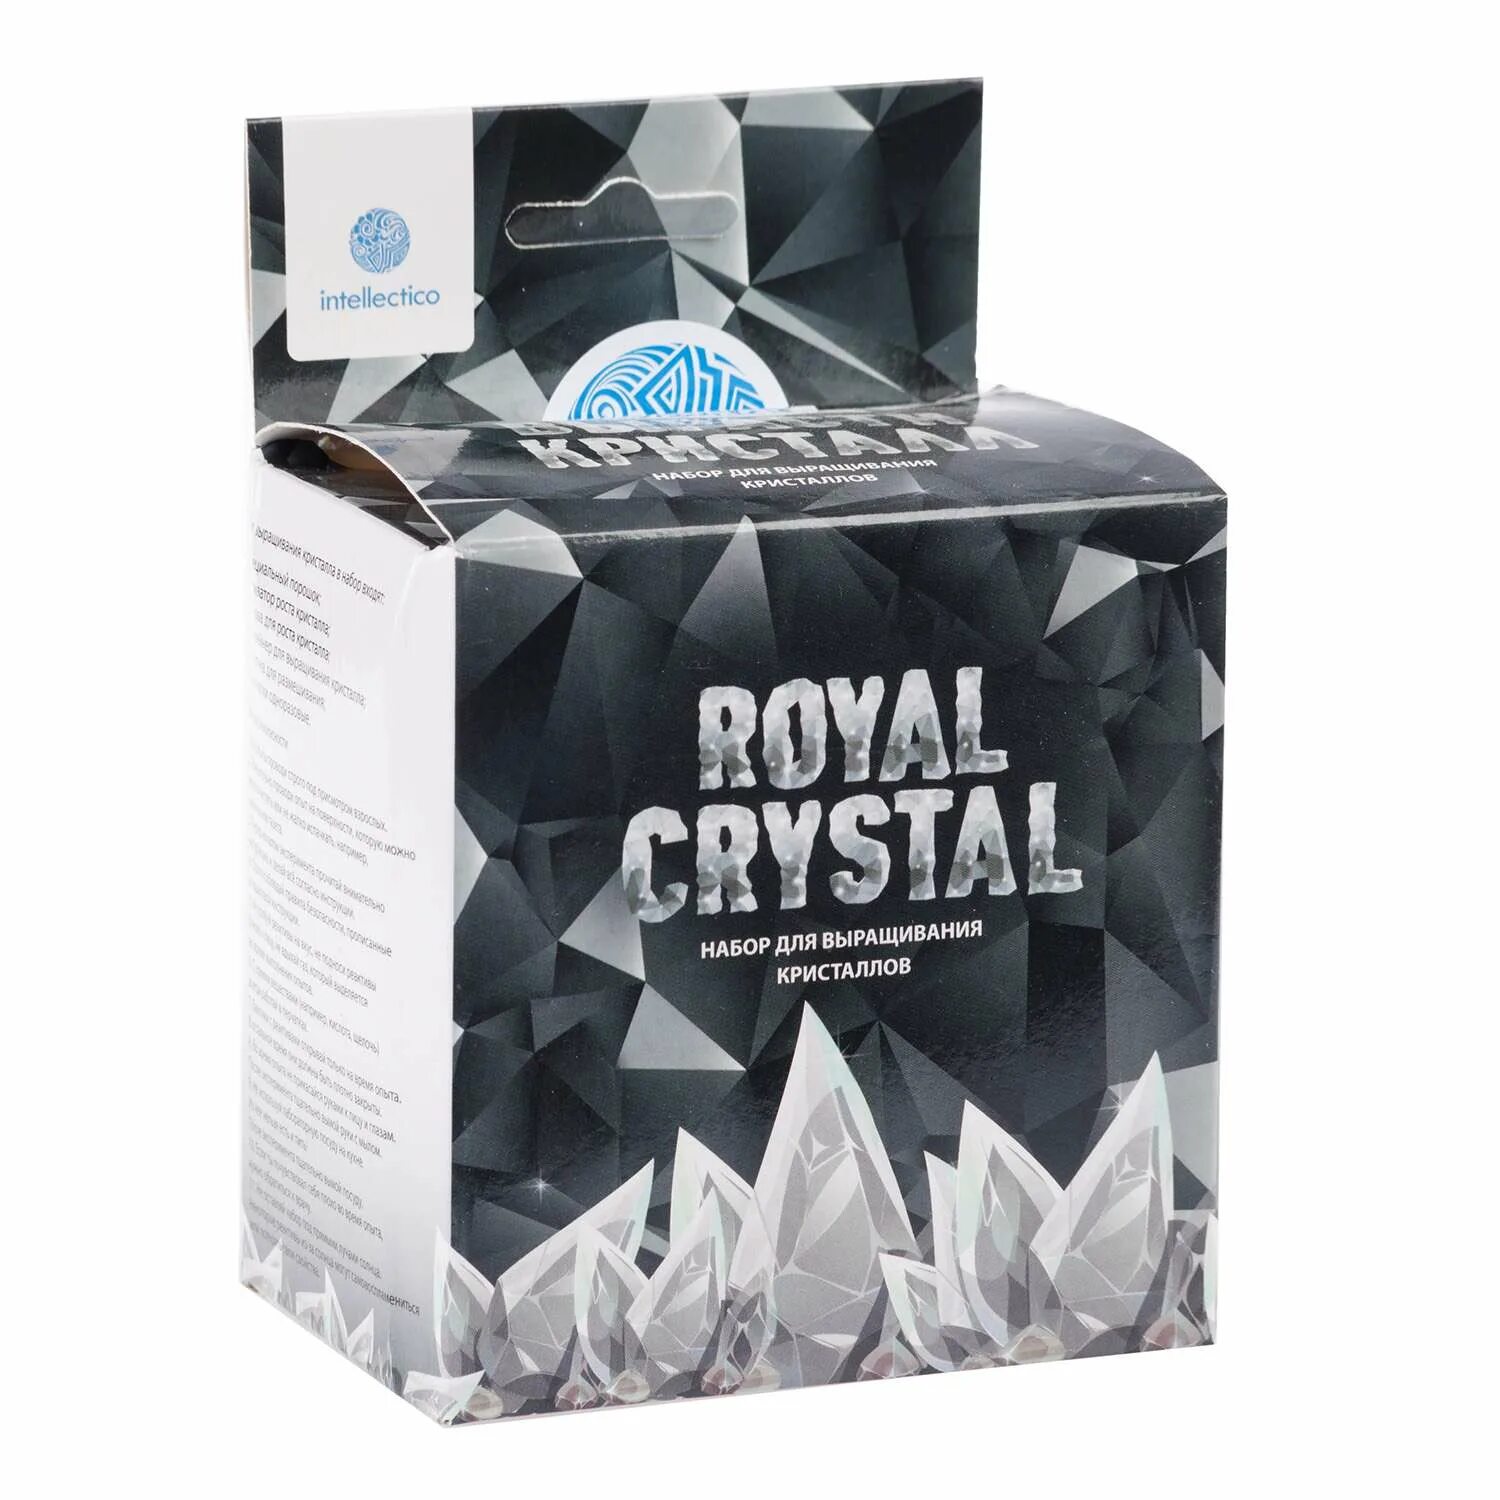 Crystal royal. Intellectico Royal Crystal. Научно-познавательный набор для проведения опытов "Royal Crystal" 513. Набор для опытов Кристалл. Intellectico Royal Crystal состав.